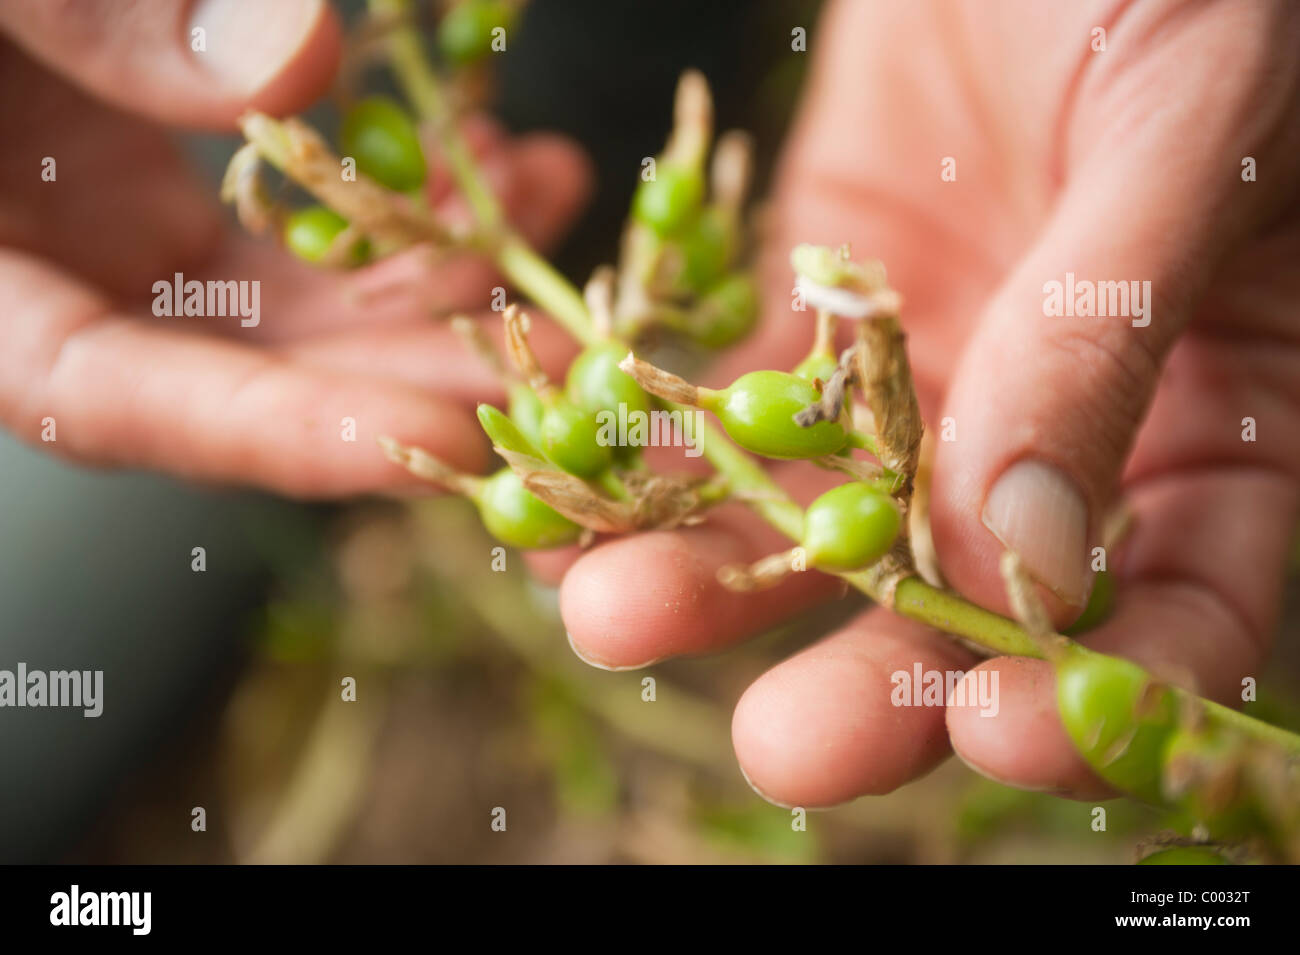 Grüner Kardamom oder Elettaria Pflanze vor Hülsen wachsen auf einem Bauernhof in Honduras, Mittelamerika von hand geerntet werden. Stockfoto